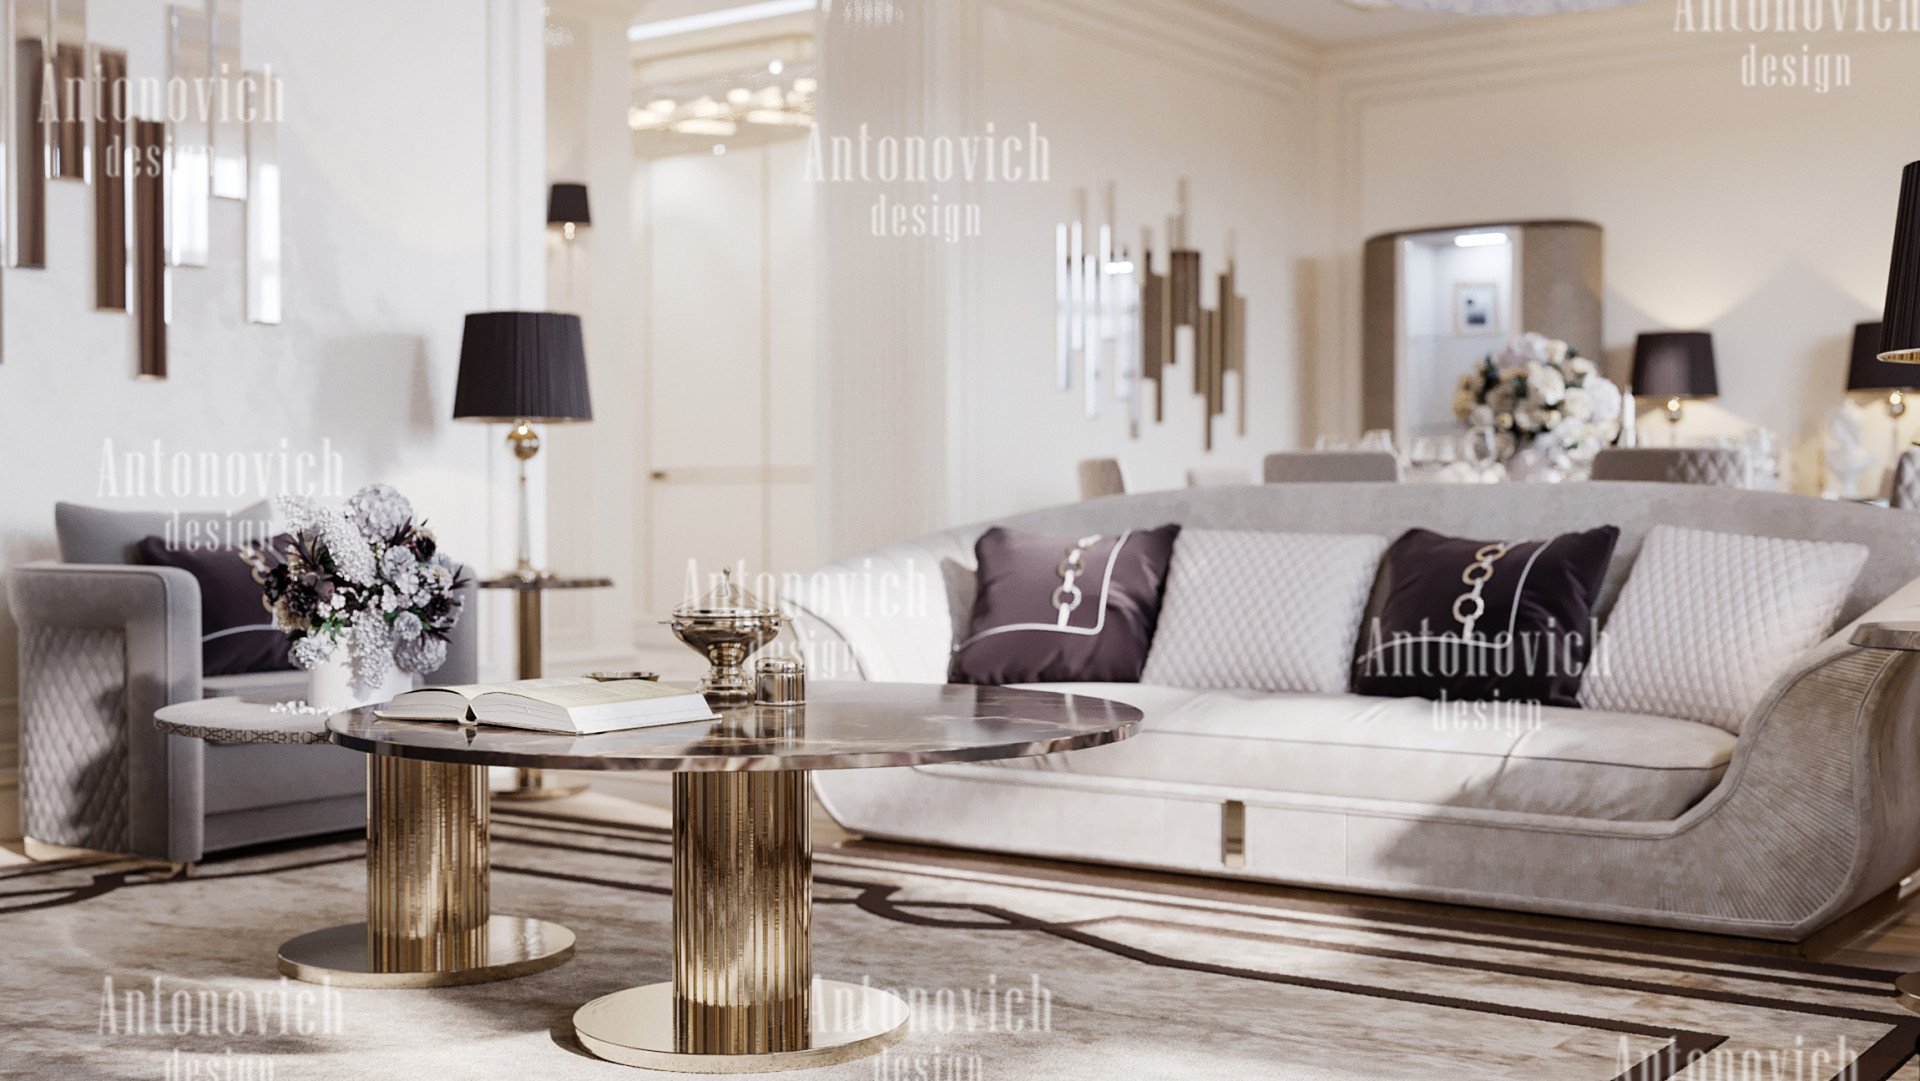 Interior Designs Near Me - Luxury Antonovich Design USA